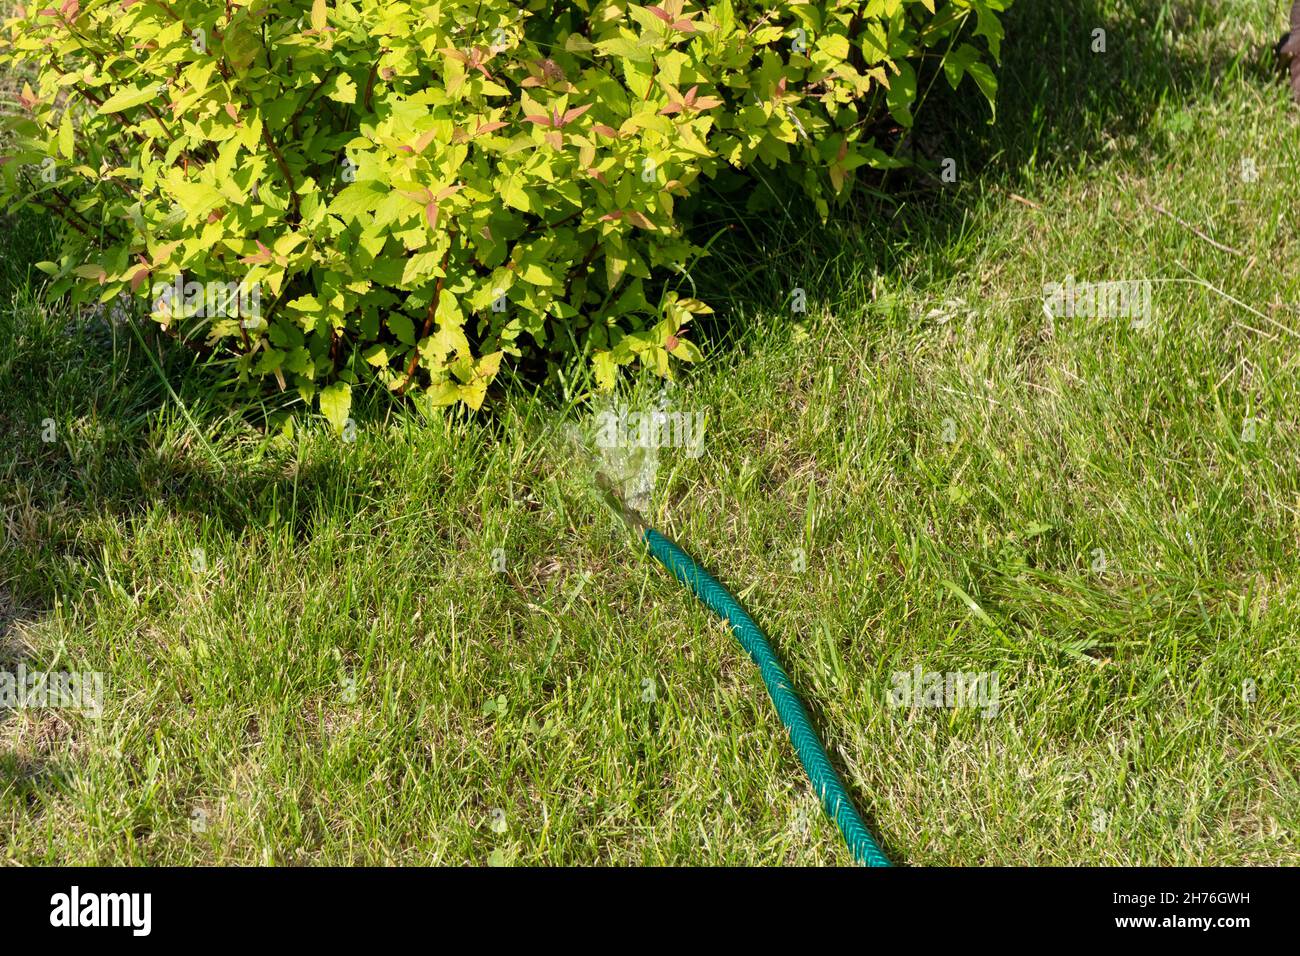 An einem sonnigen Sommertag wird ein japanischer Spirea-Busch aus einem flexiblen Gartenschlauch auf dem Rasen bewässert. Stockfoto